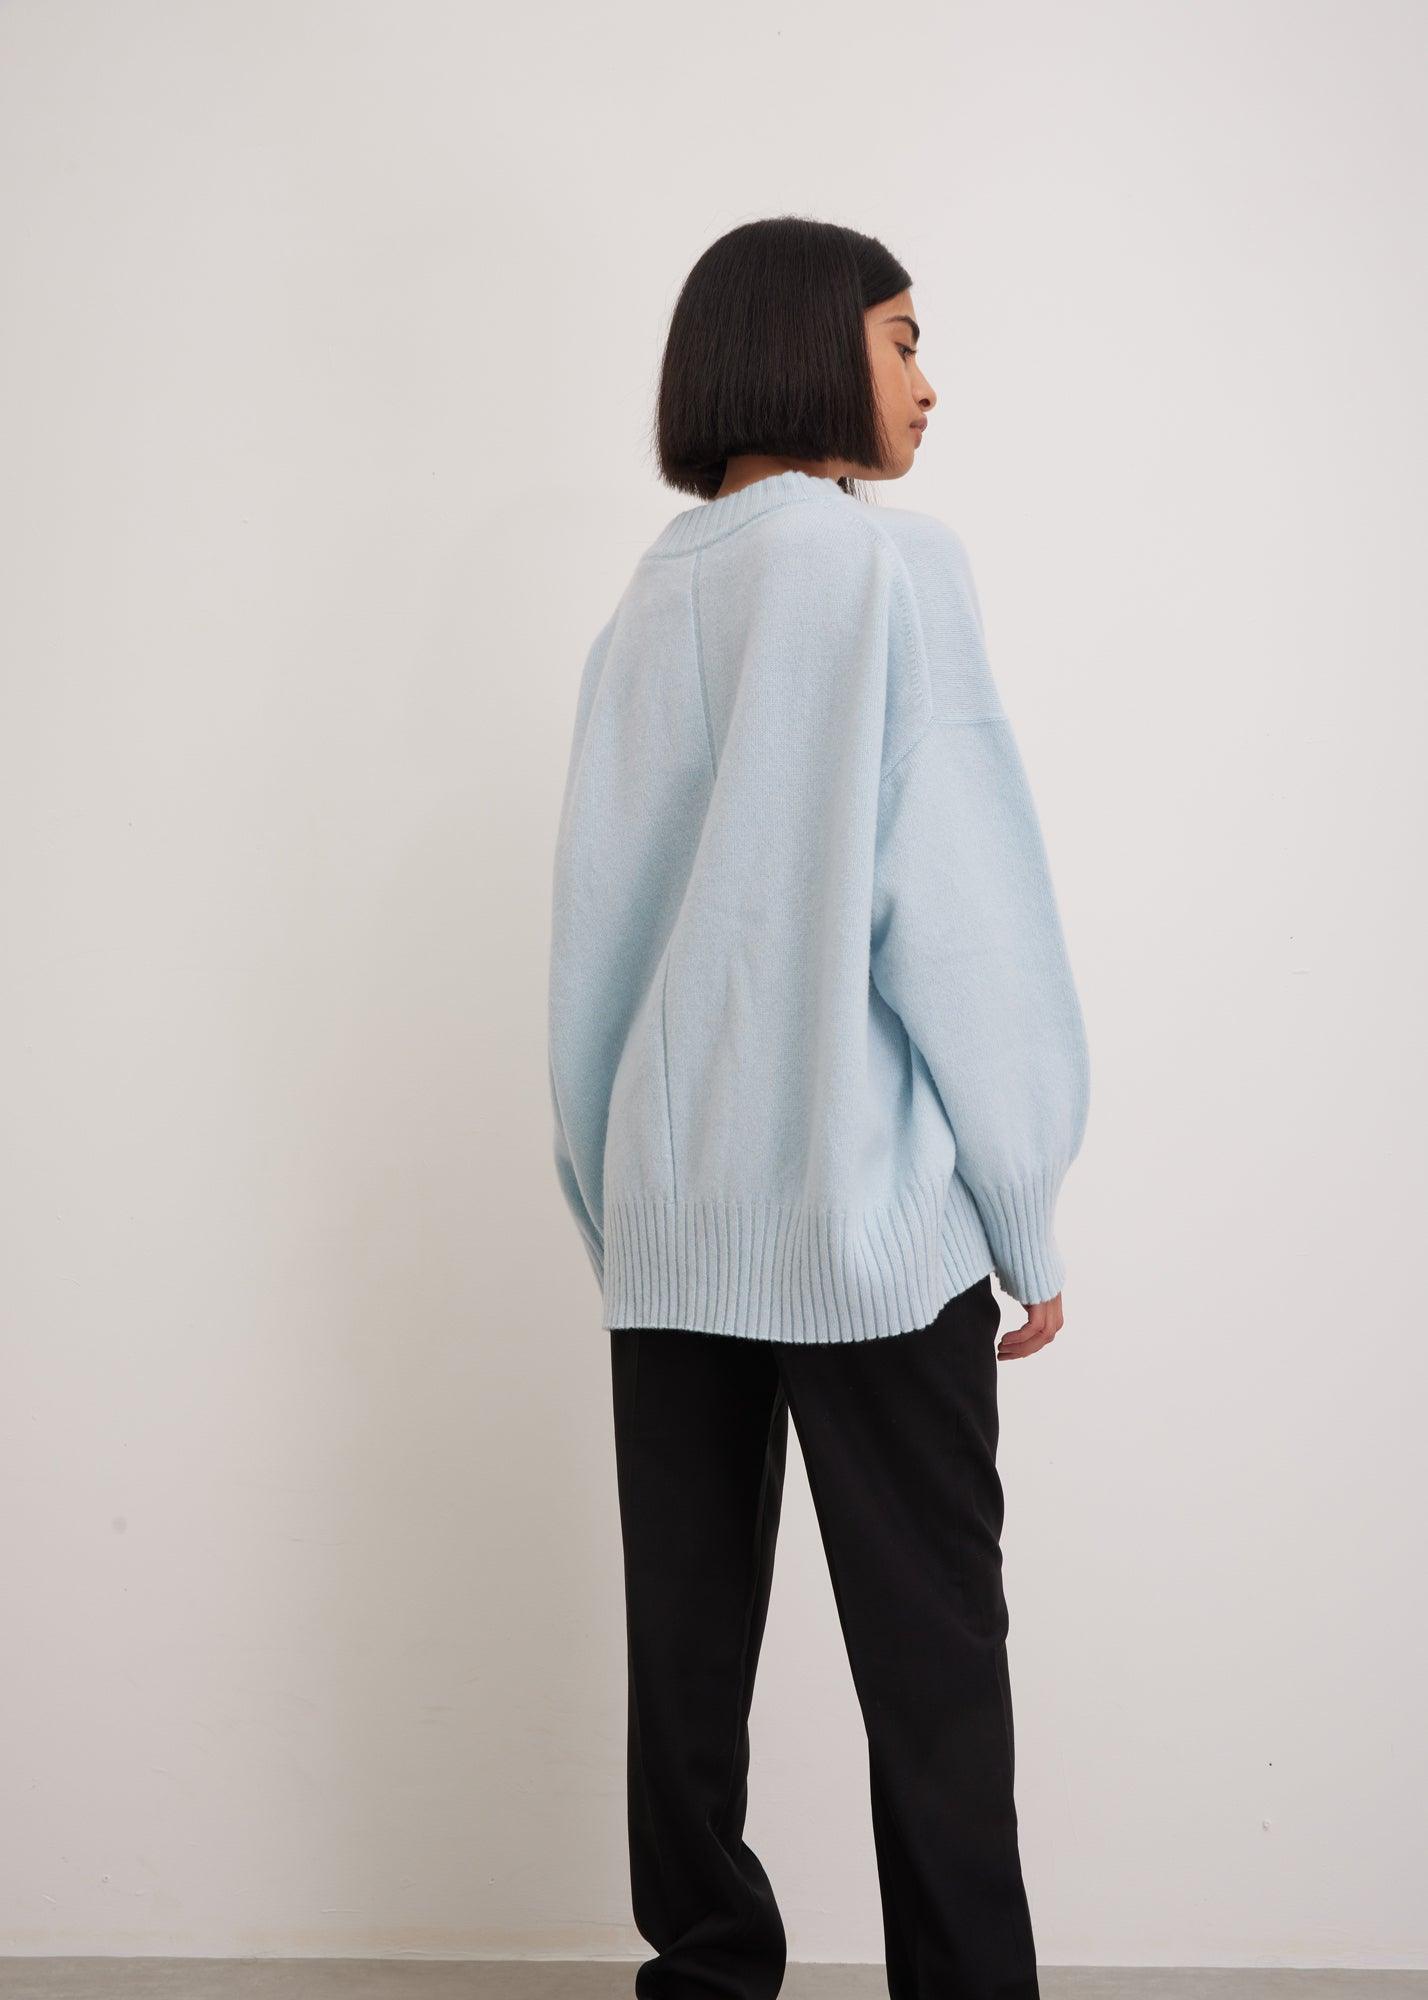 Light Blue Wool Cashmere Sweater | Luxury Knitwear | Designer Sweater 